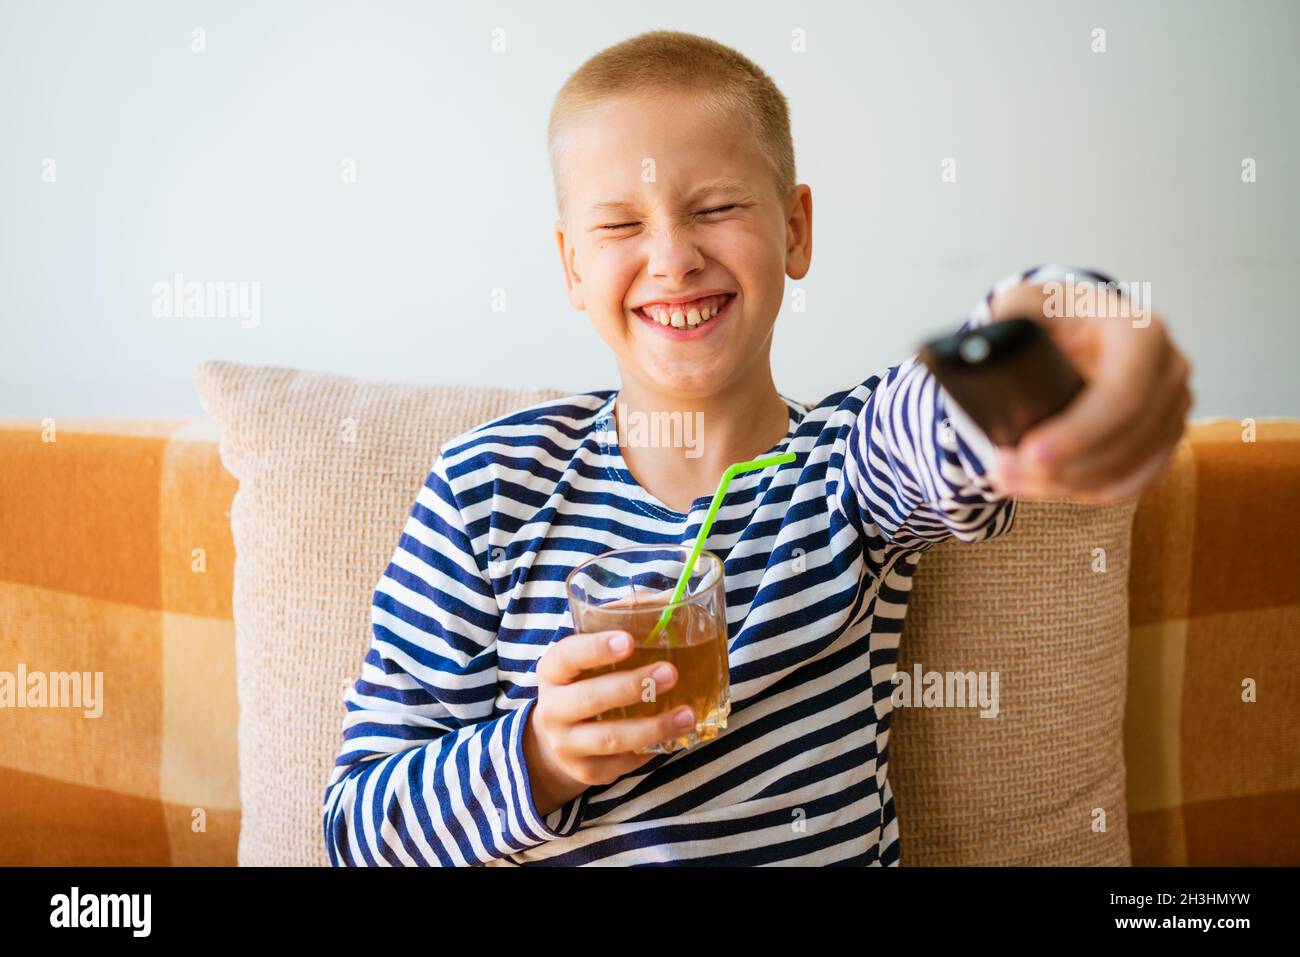 Un garçon d'âge scolaire caucasien est assis sur un canapé dans des vêtements décontractés avec une télécommande dans sa main et change de chaîne sur la télévision. Et boire du jus dans un verre à travers une paille. Concept de loisirs maison de vacances Banque D'Images